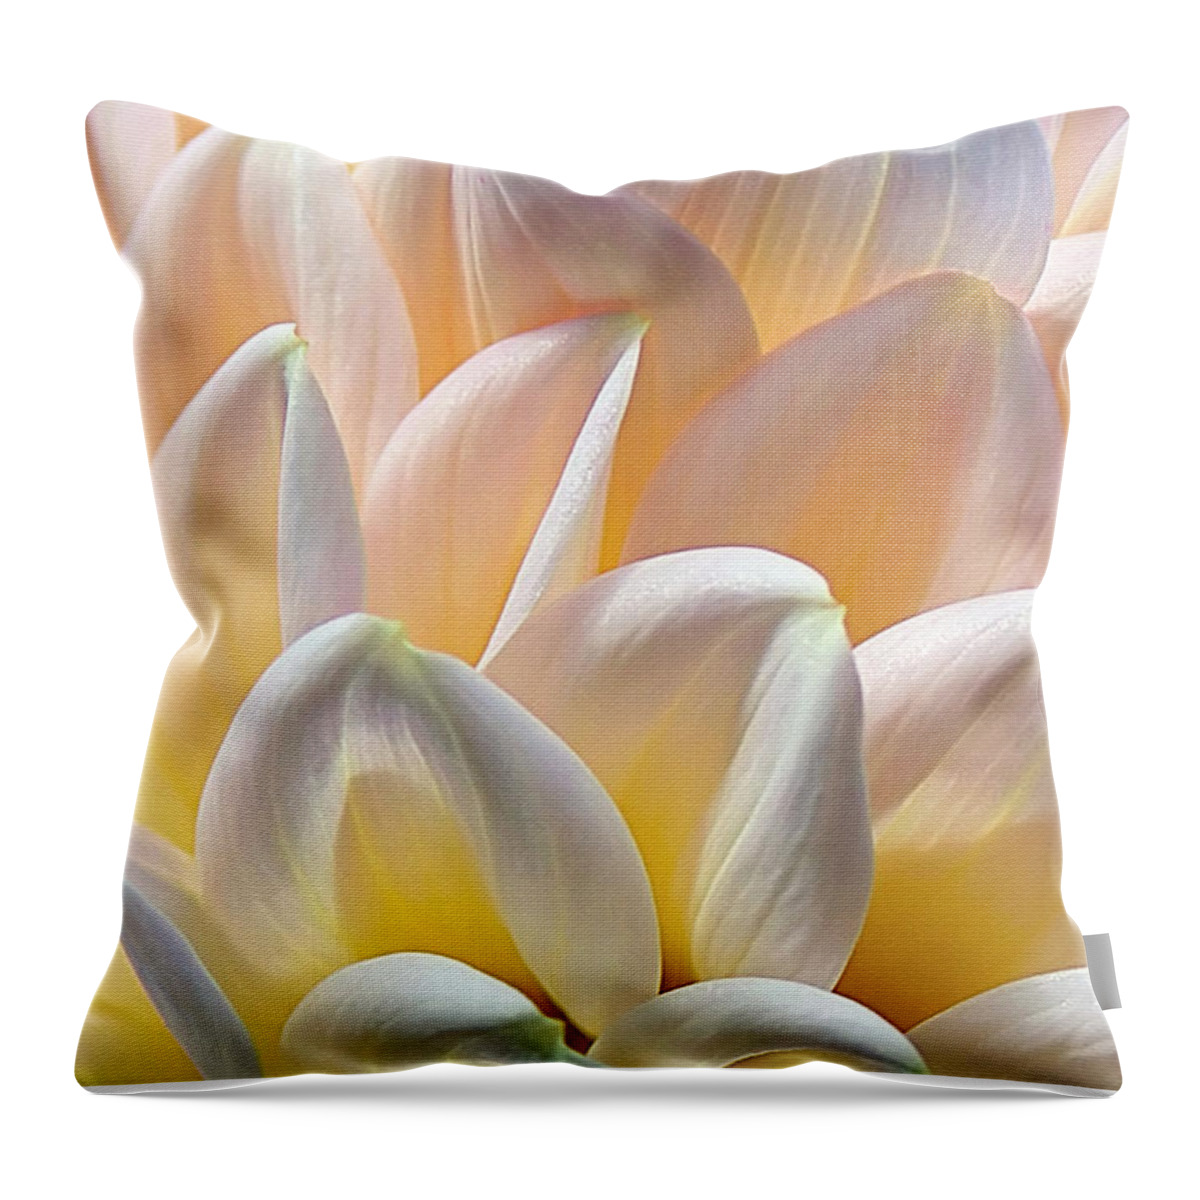 Pretty Pastel Petal Patterns Throw Pillow featuring the photograph Pretty Pastel Petal Patterns by Kaye Menner